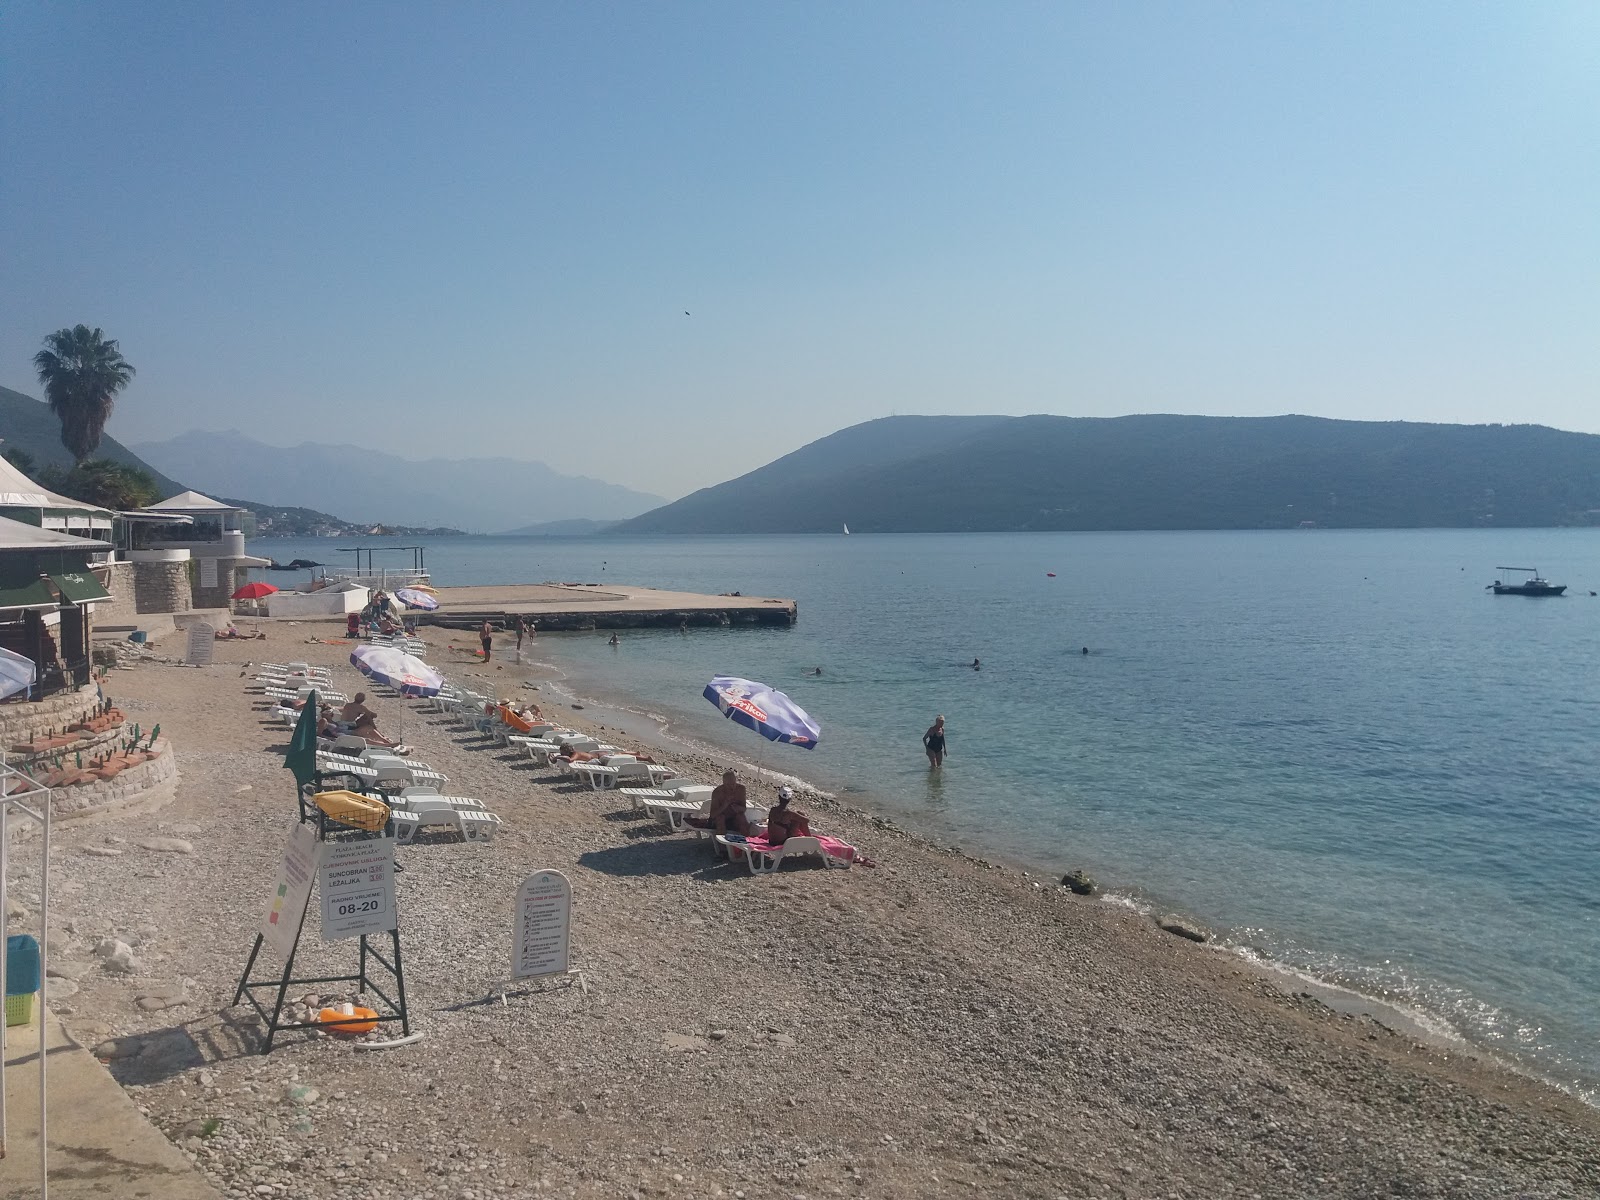 Photo of Corovica plazha beach resort area